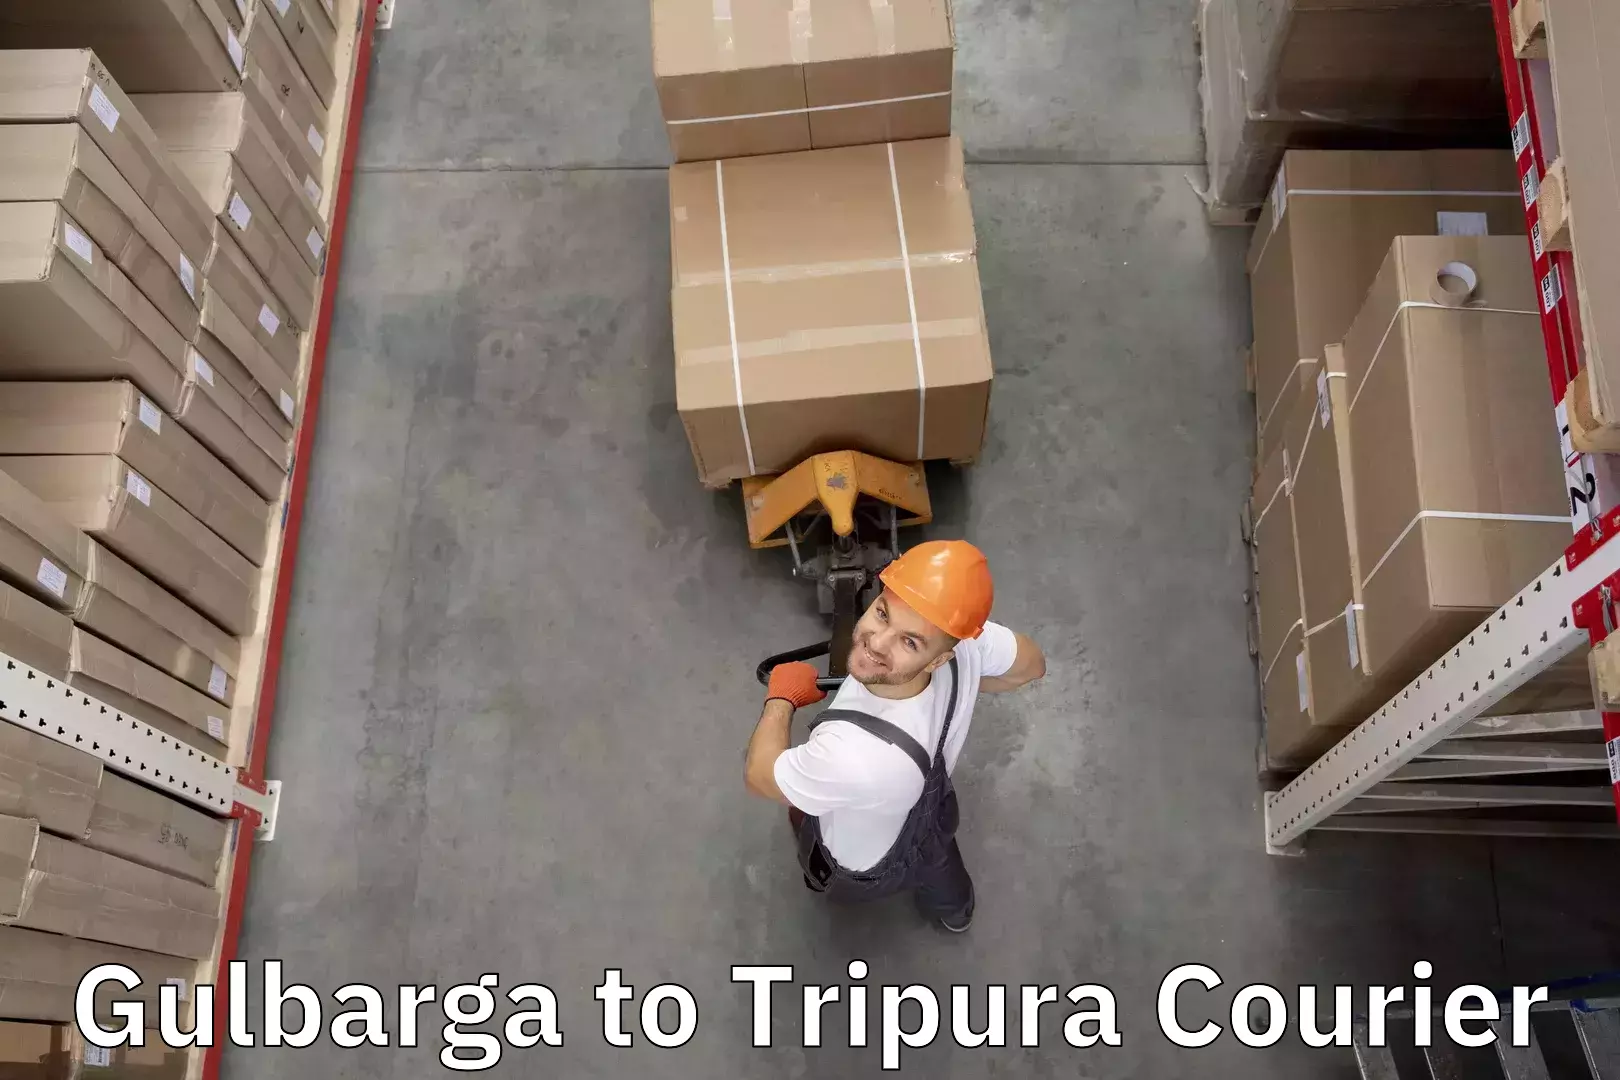 Luggage delivery app Gulbarga to Agartala